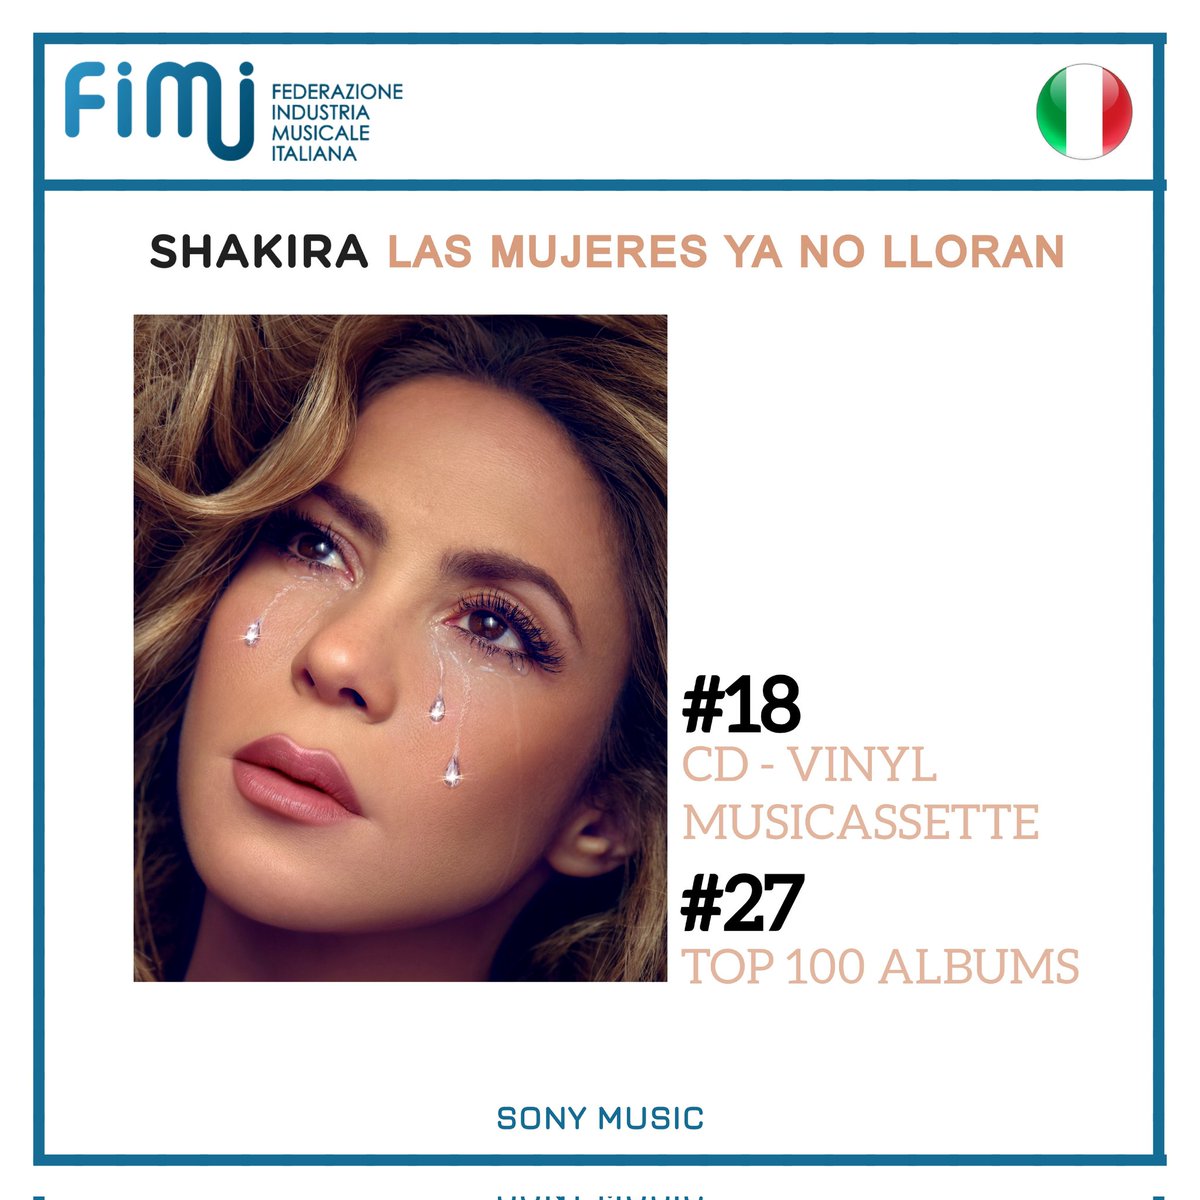 🇮🇹 | Las Mujeres Ya No Lloran de @shakira debuta en las listas semanales de ventas en Italia.

#18 - CD - Vinyl - Musicassette
#27 - Top 100 Albums
Source: @FIMI_IT
Escuchar:surl.li/saxgc

@SonyMusicItaly @SonyMusicLatin
#LasMujeresYaNoLloran #ShakiraCharts